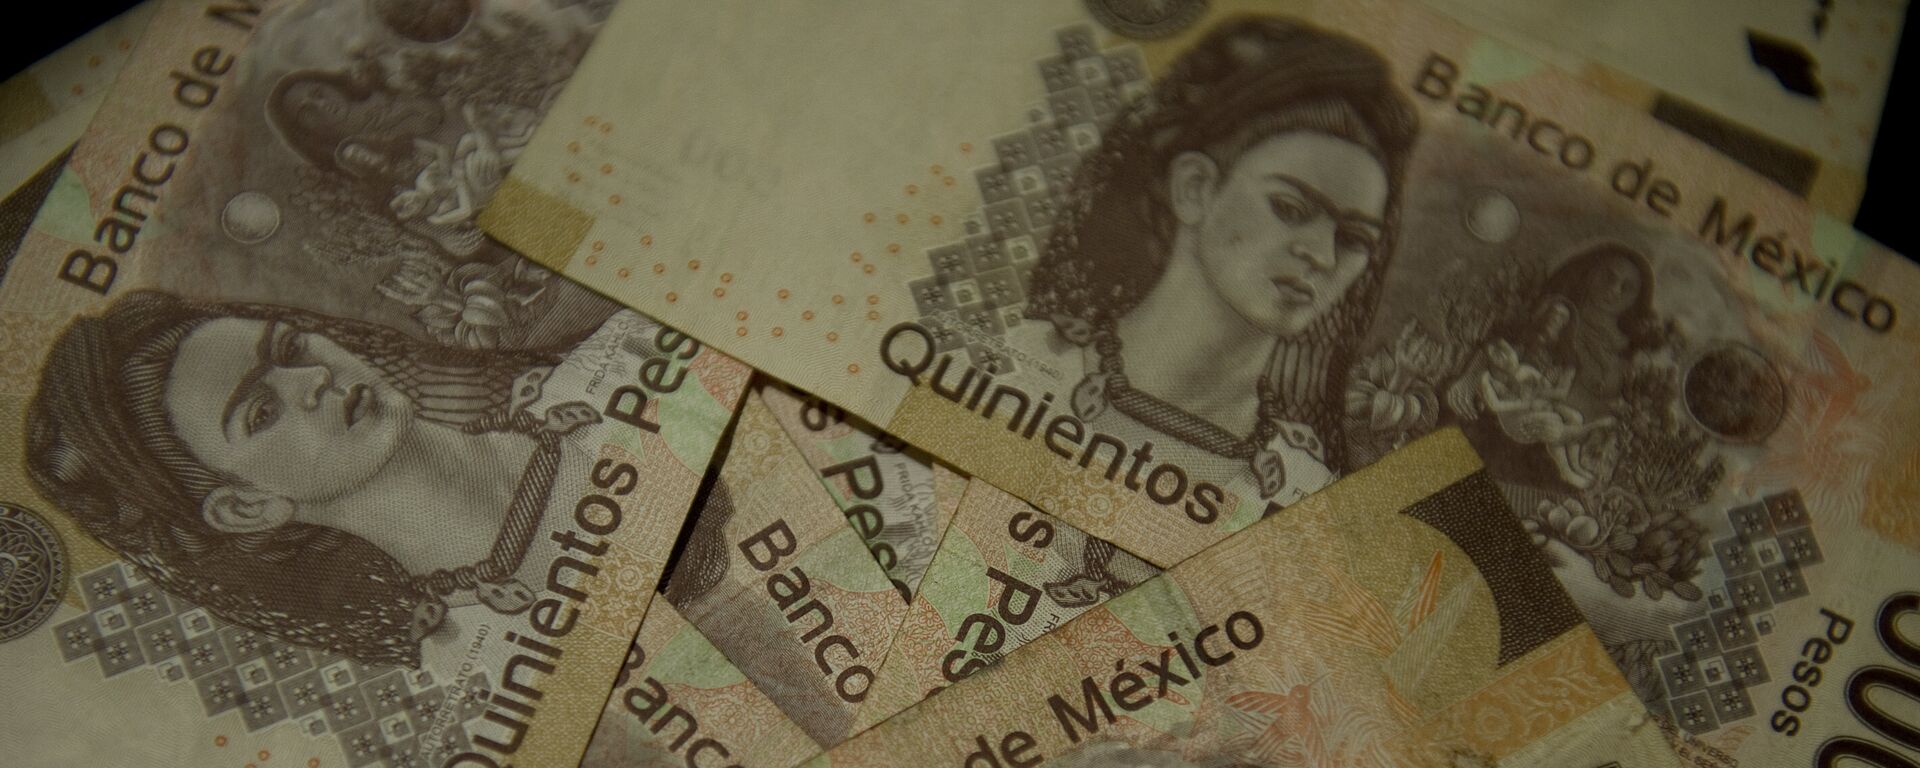 Pesos mexicanos (imagen referencial) - Sputnik Mundo, 1920, 06.05.2020